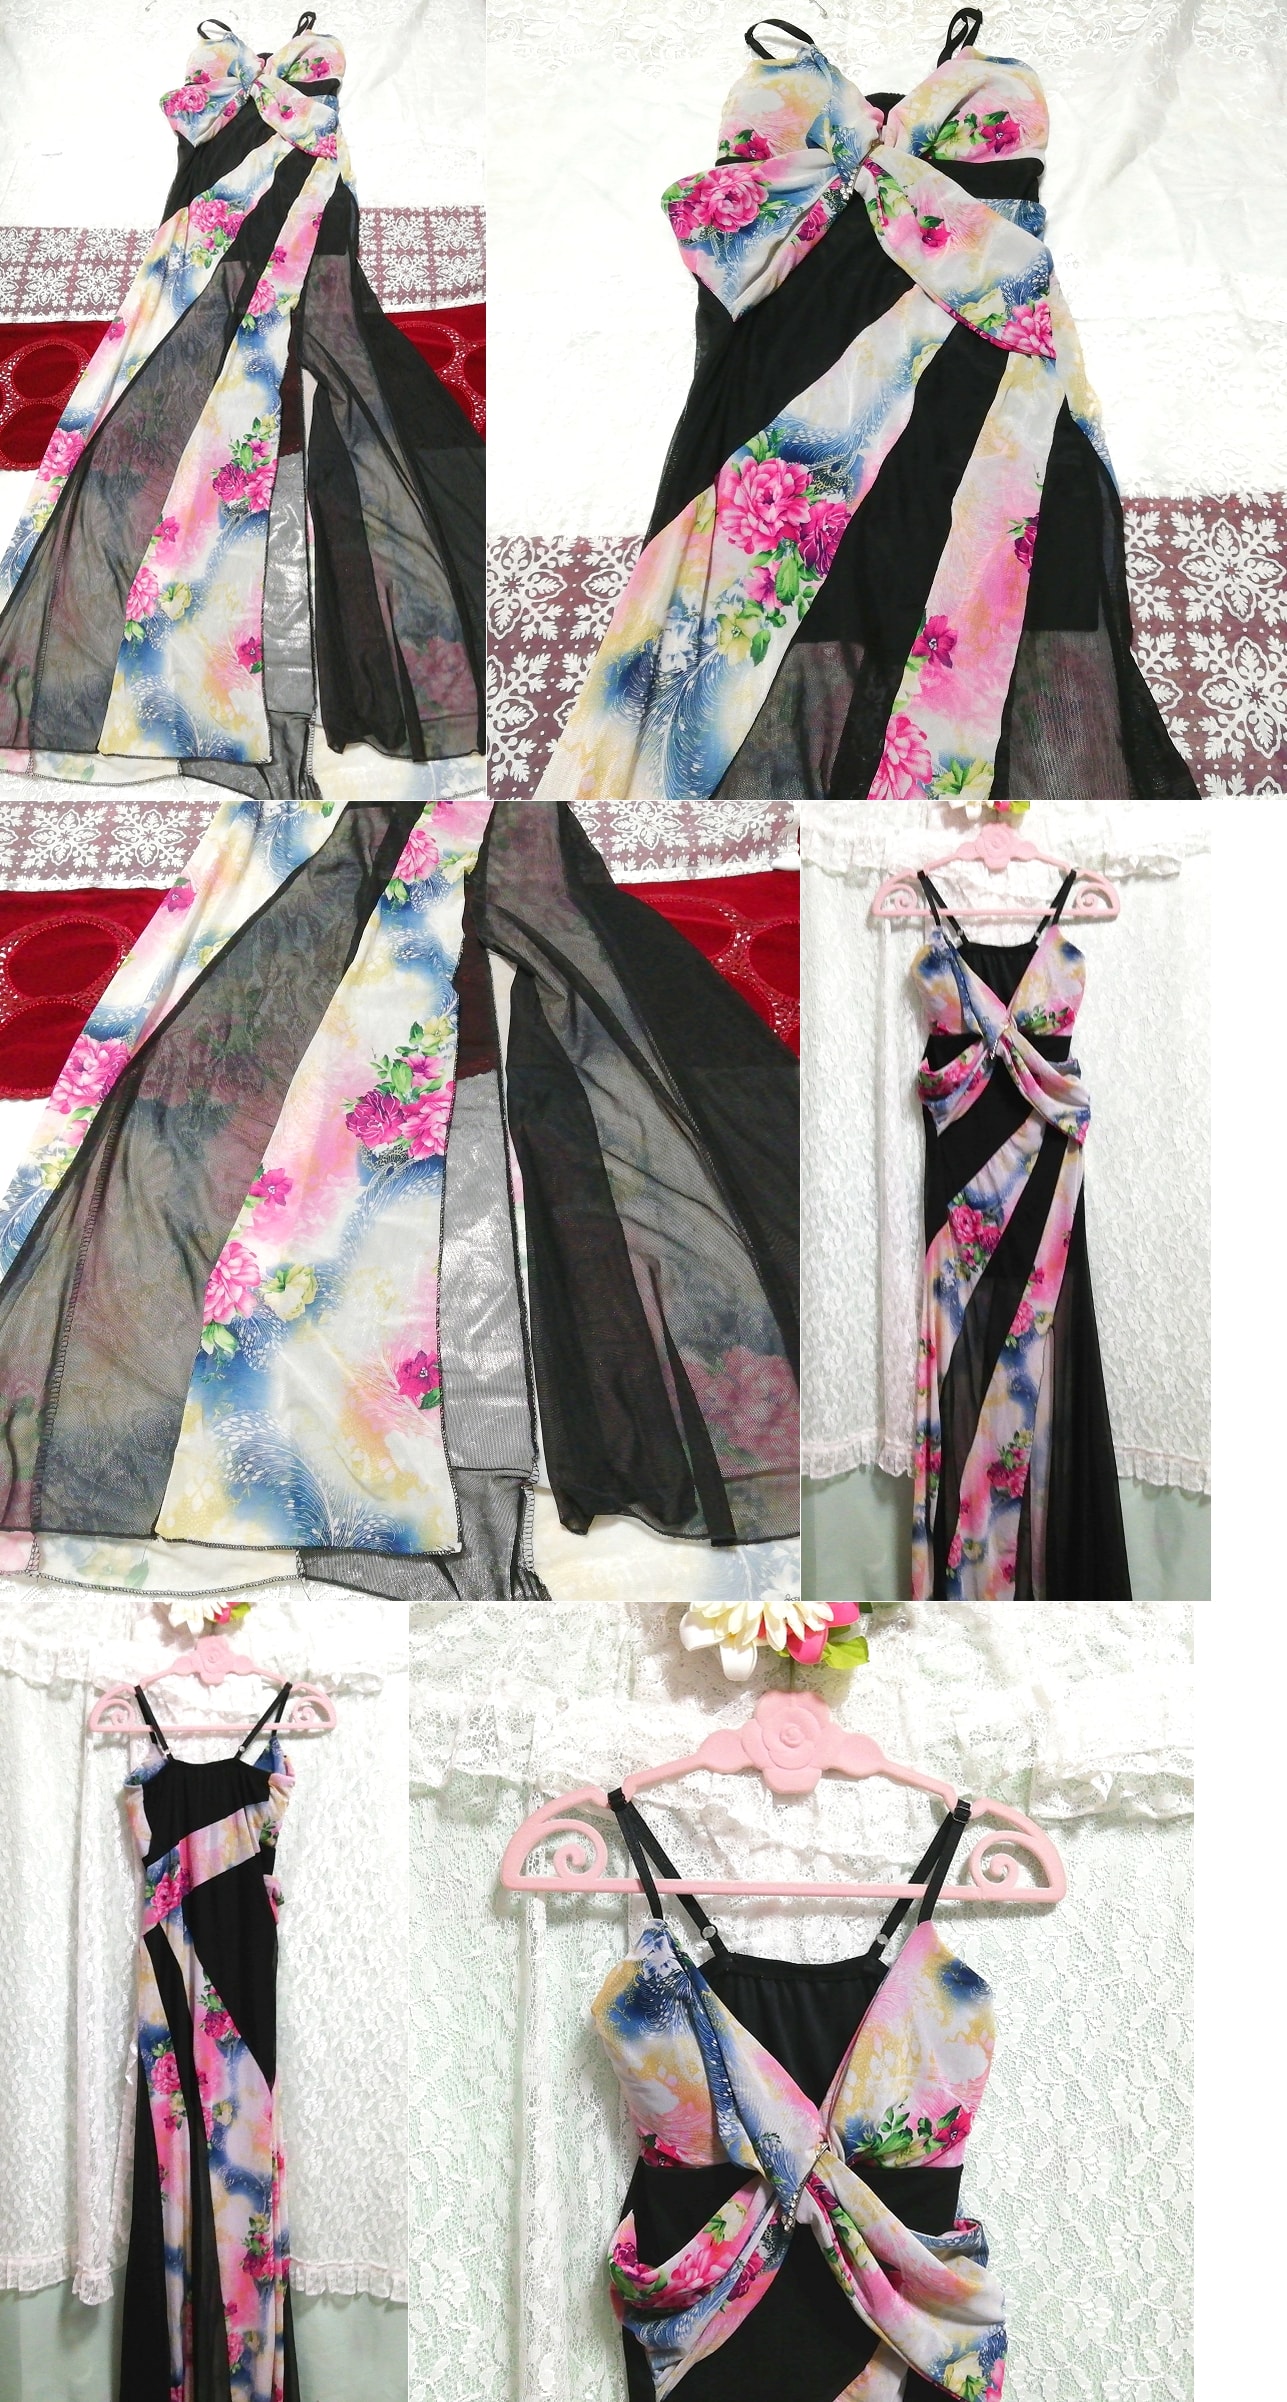 黒レース花柄ネグリジェキャミソールマキシワンピースドレス Black lace seethrough floral pattern negligee camisole maxi dress, ワンピース, ロングスカート, Mサイズ